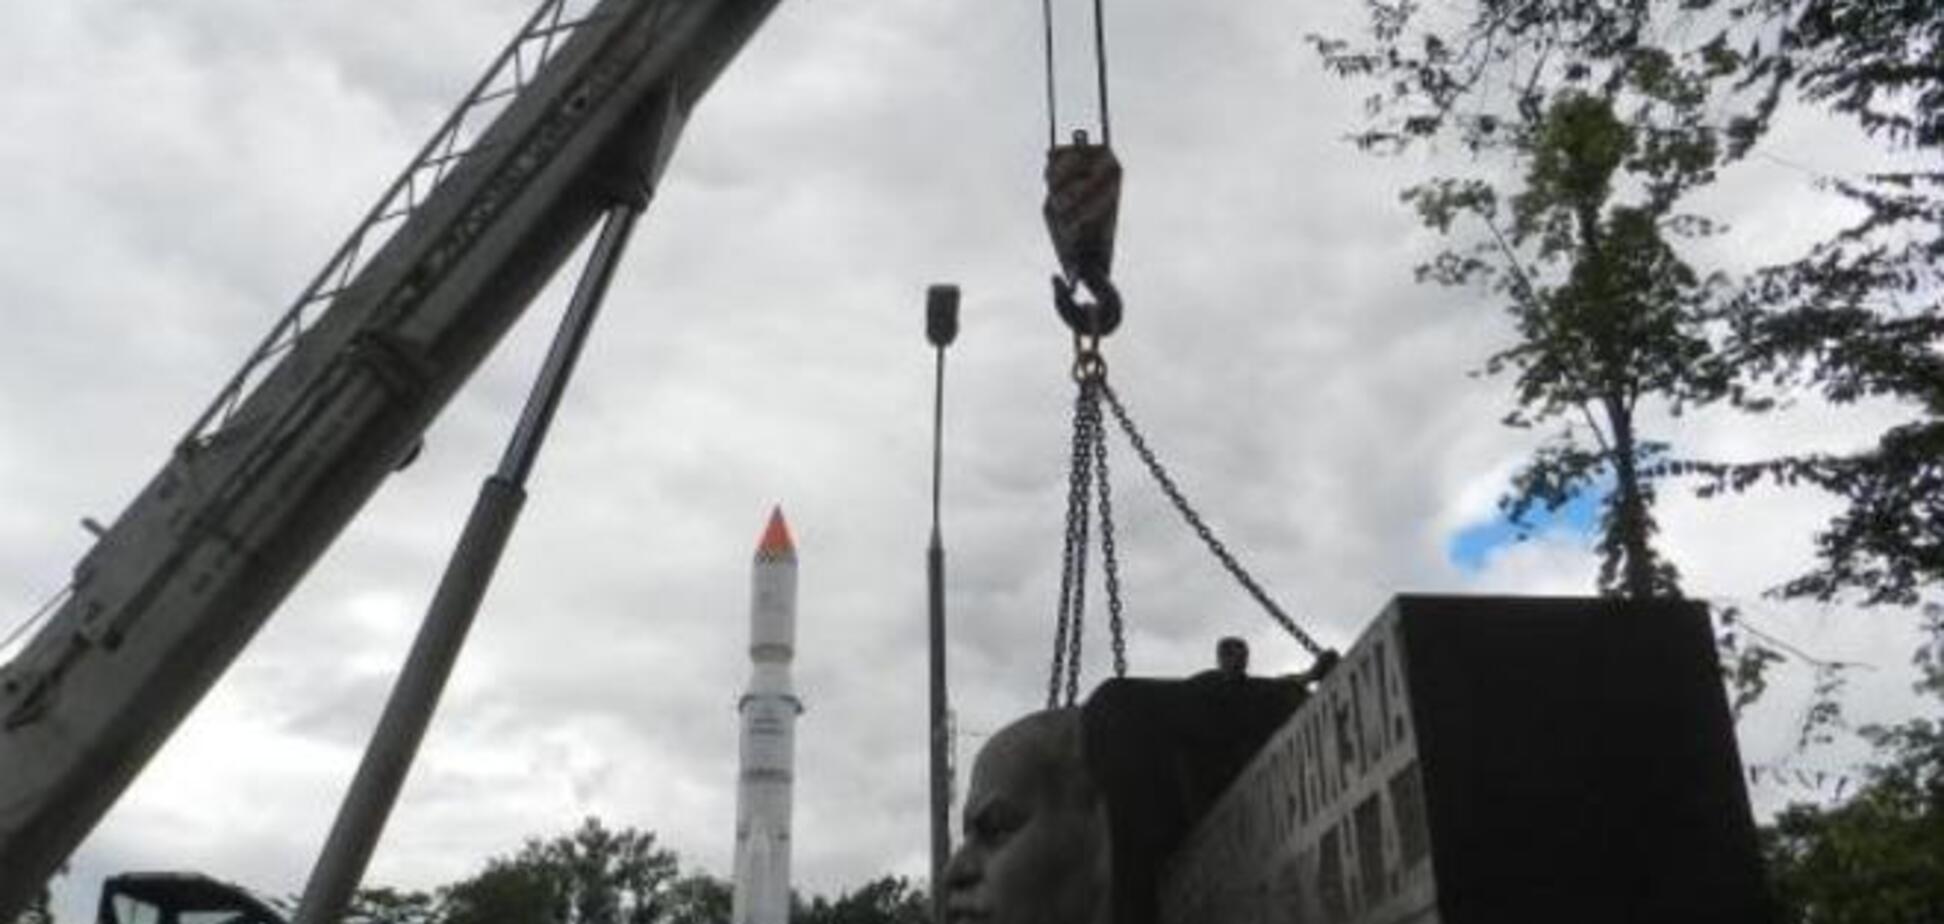 У Дніпропетровську стелу Леніна замінять на пам'ятник загиблим в АТО